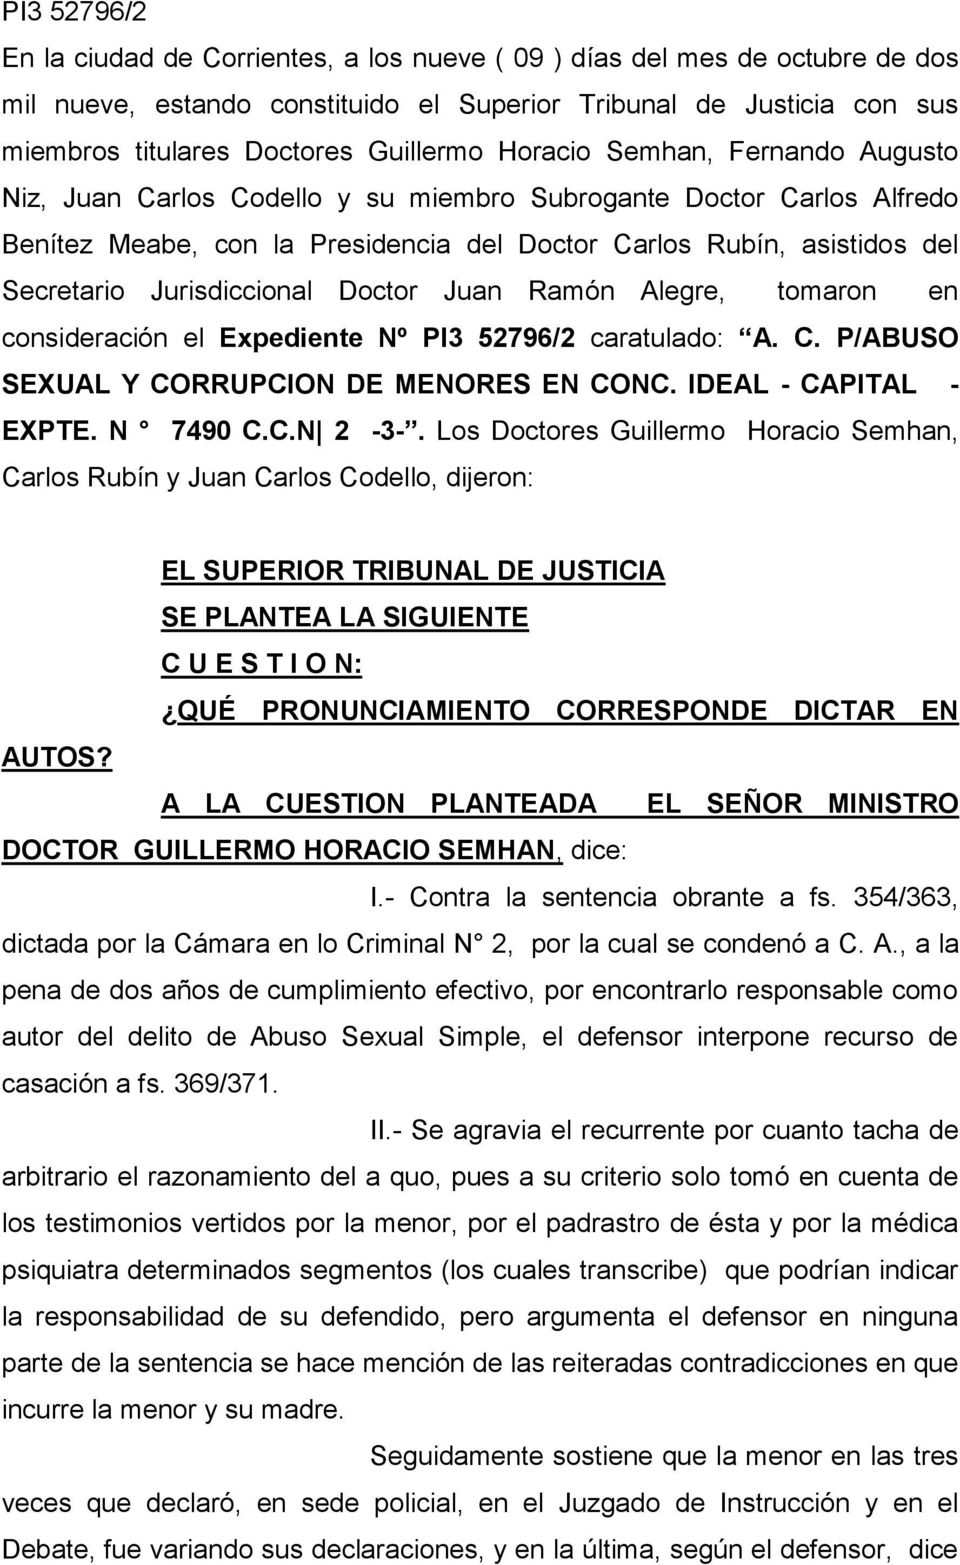 Jurisdiccional Doctor Juan Ramón Alegre, tomaron en consideración el Expediente Nº PI3 52796/2 caratulado: A. C. P/ABUSO SEXUAL Y CORRUPCION DE MENORES EN CONC. IDEAL - CAPITAL - EXPTE. N 7490 C.C.N 2-3-.